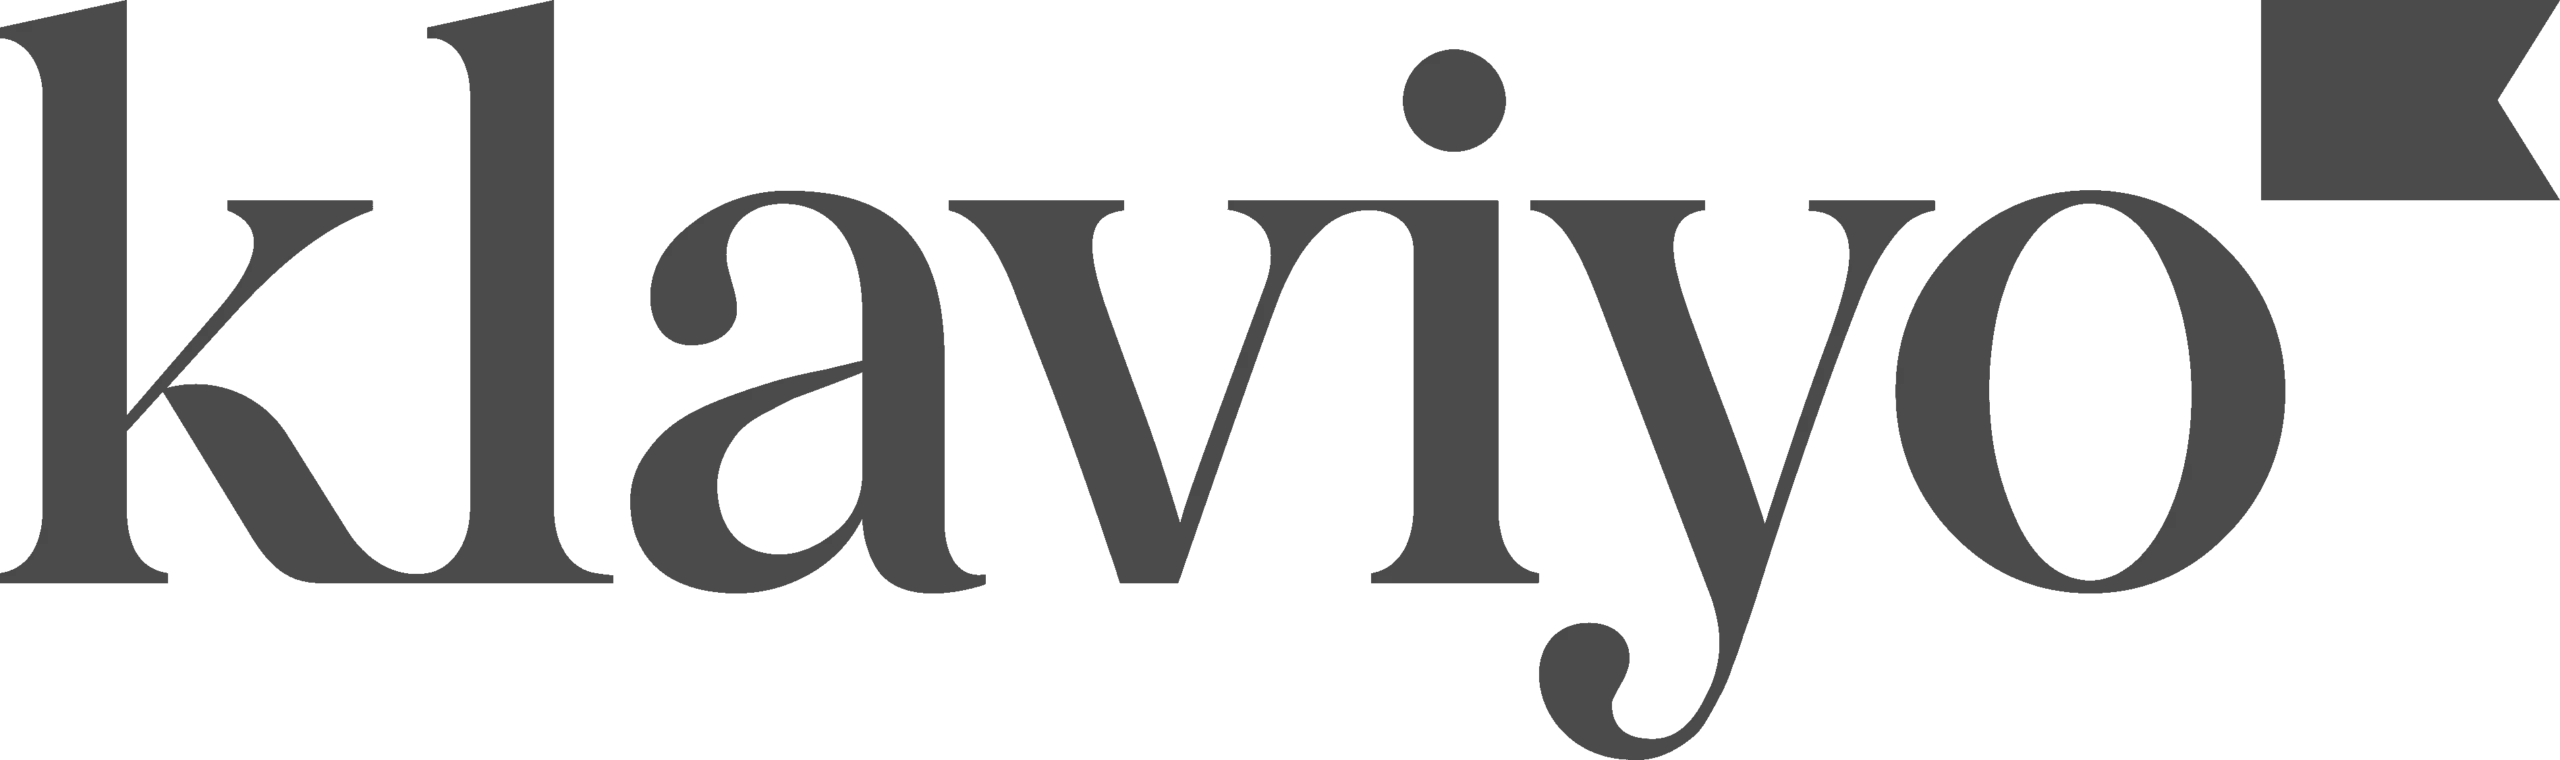 Klaviyo-Logo-copy-scaled.webp